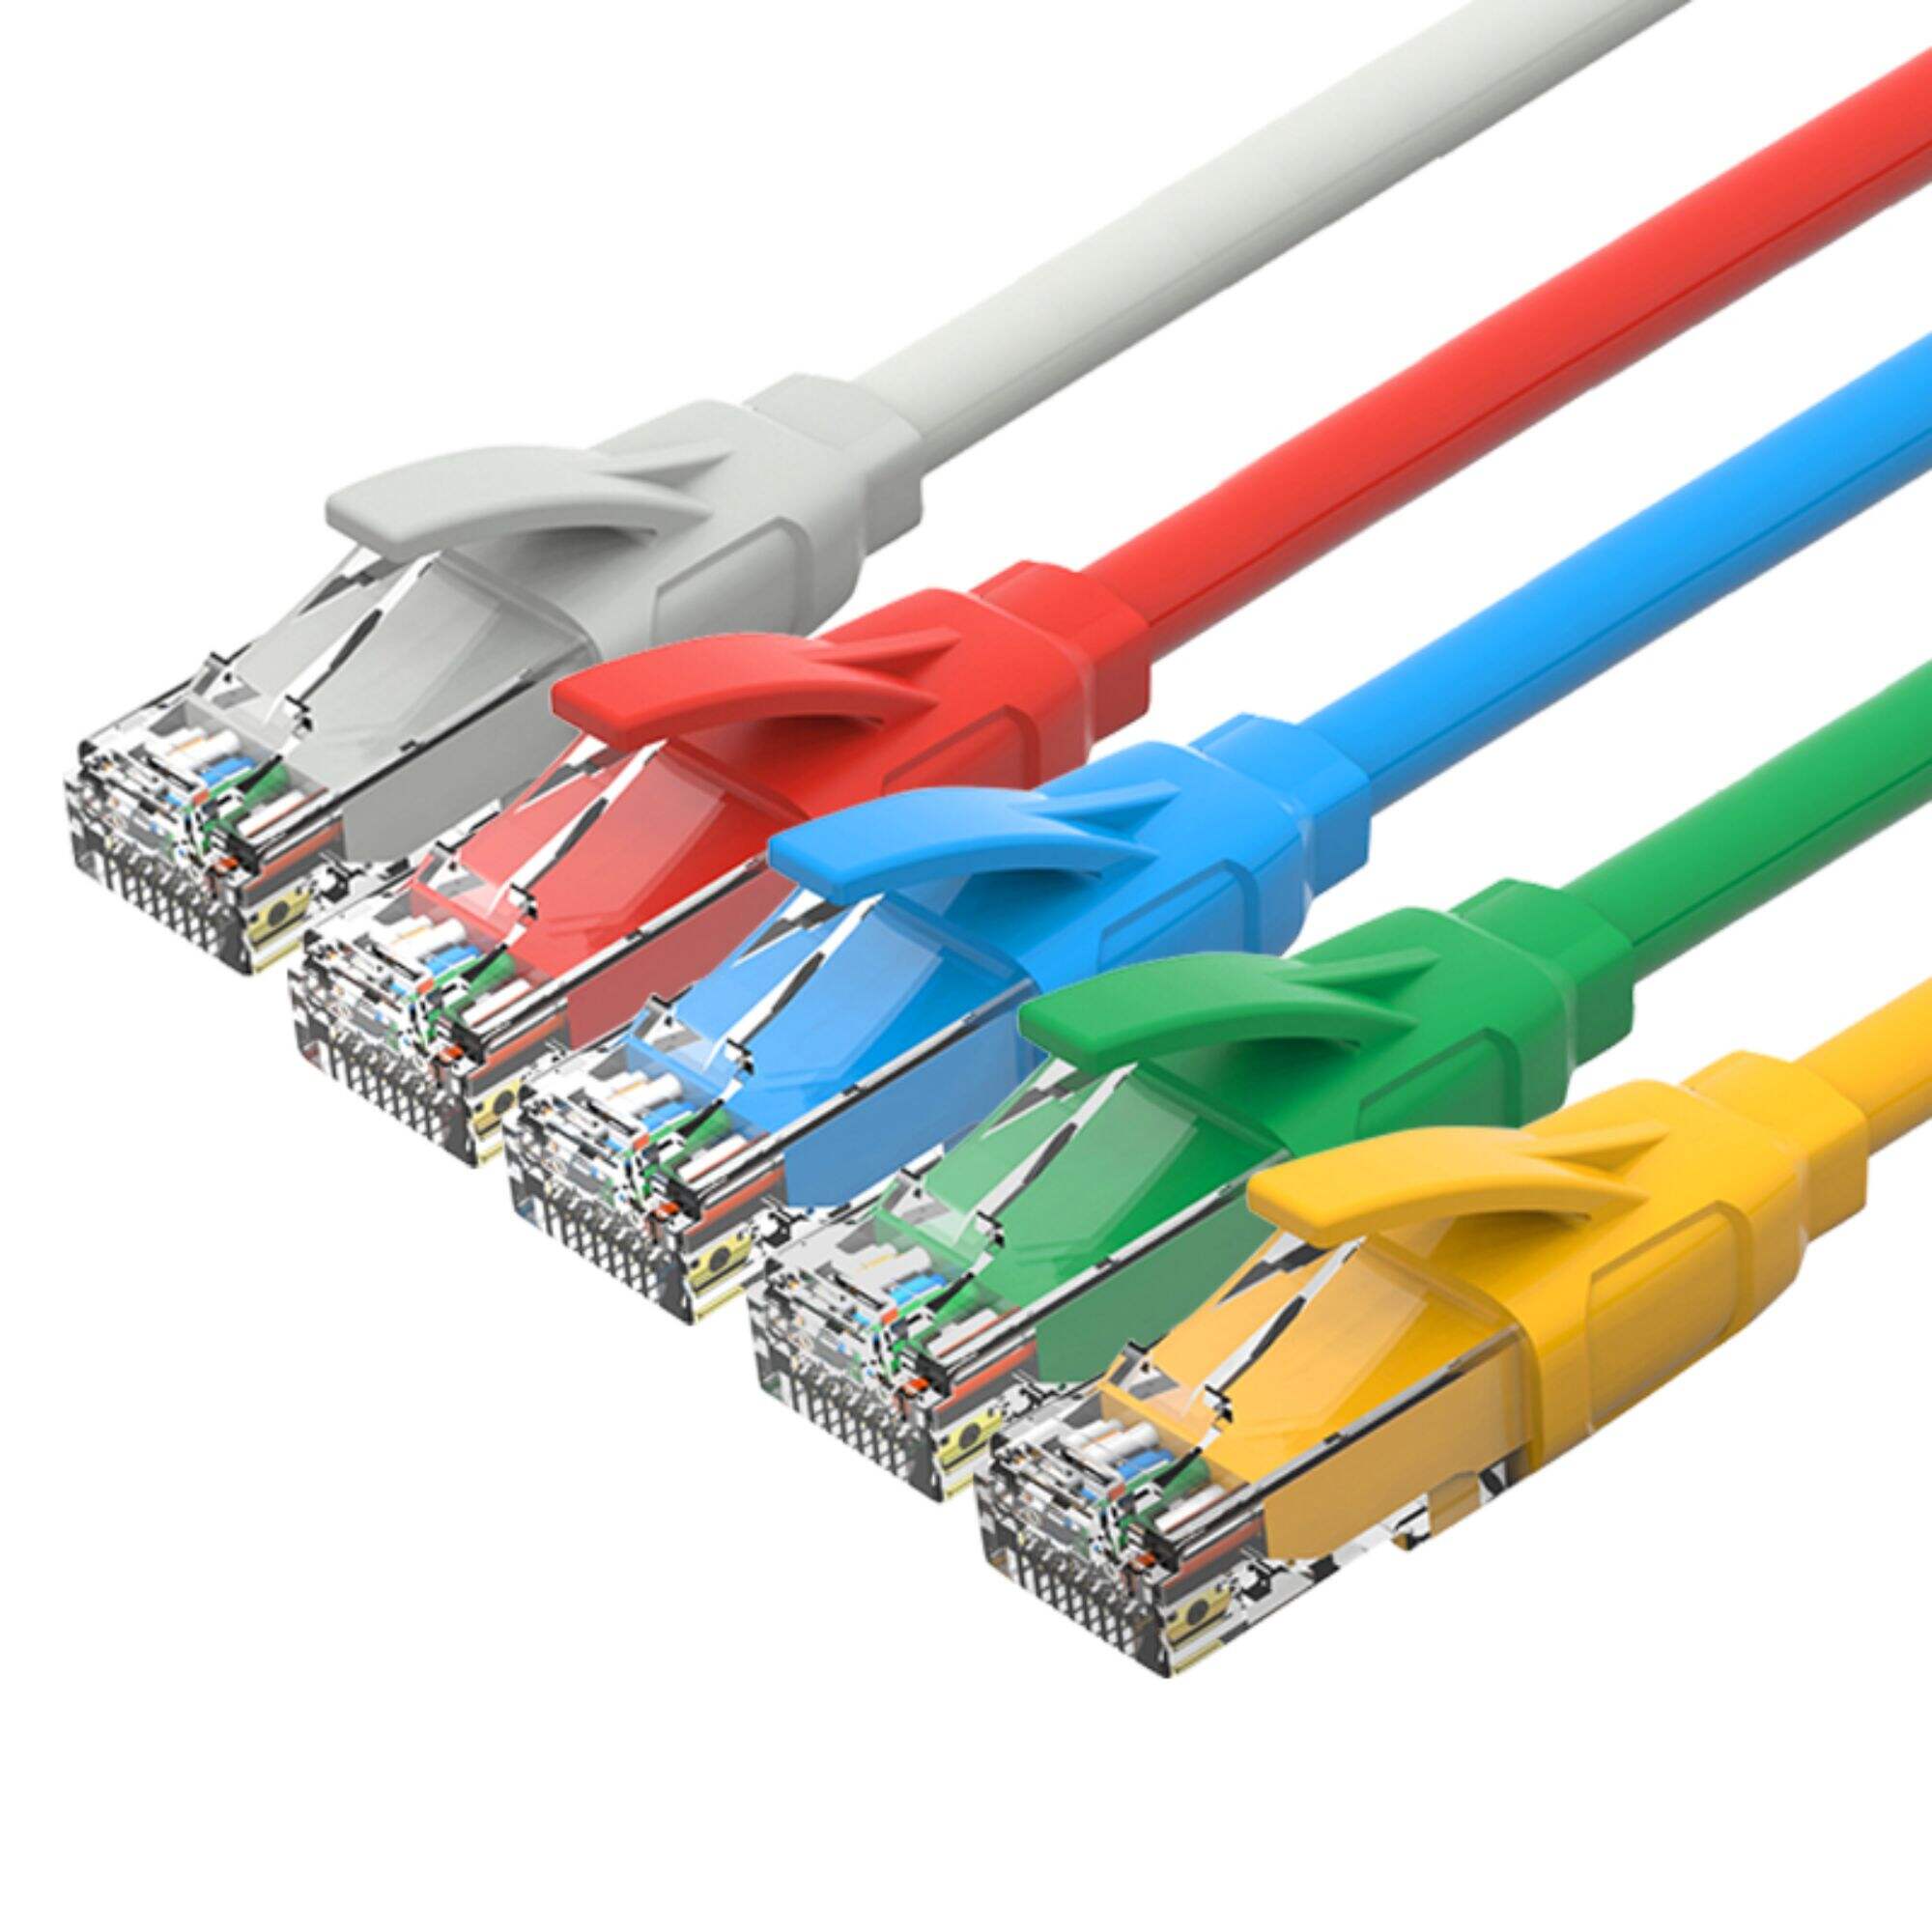 Użycie komputera złącze RJ45 kabel Ethernet Utp Ftp 1m 2m 3m 5m 1m-50m Cat5e Cat6 Cat6a kabel krosowy utp patchcord kabel rj45